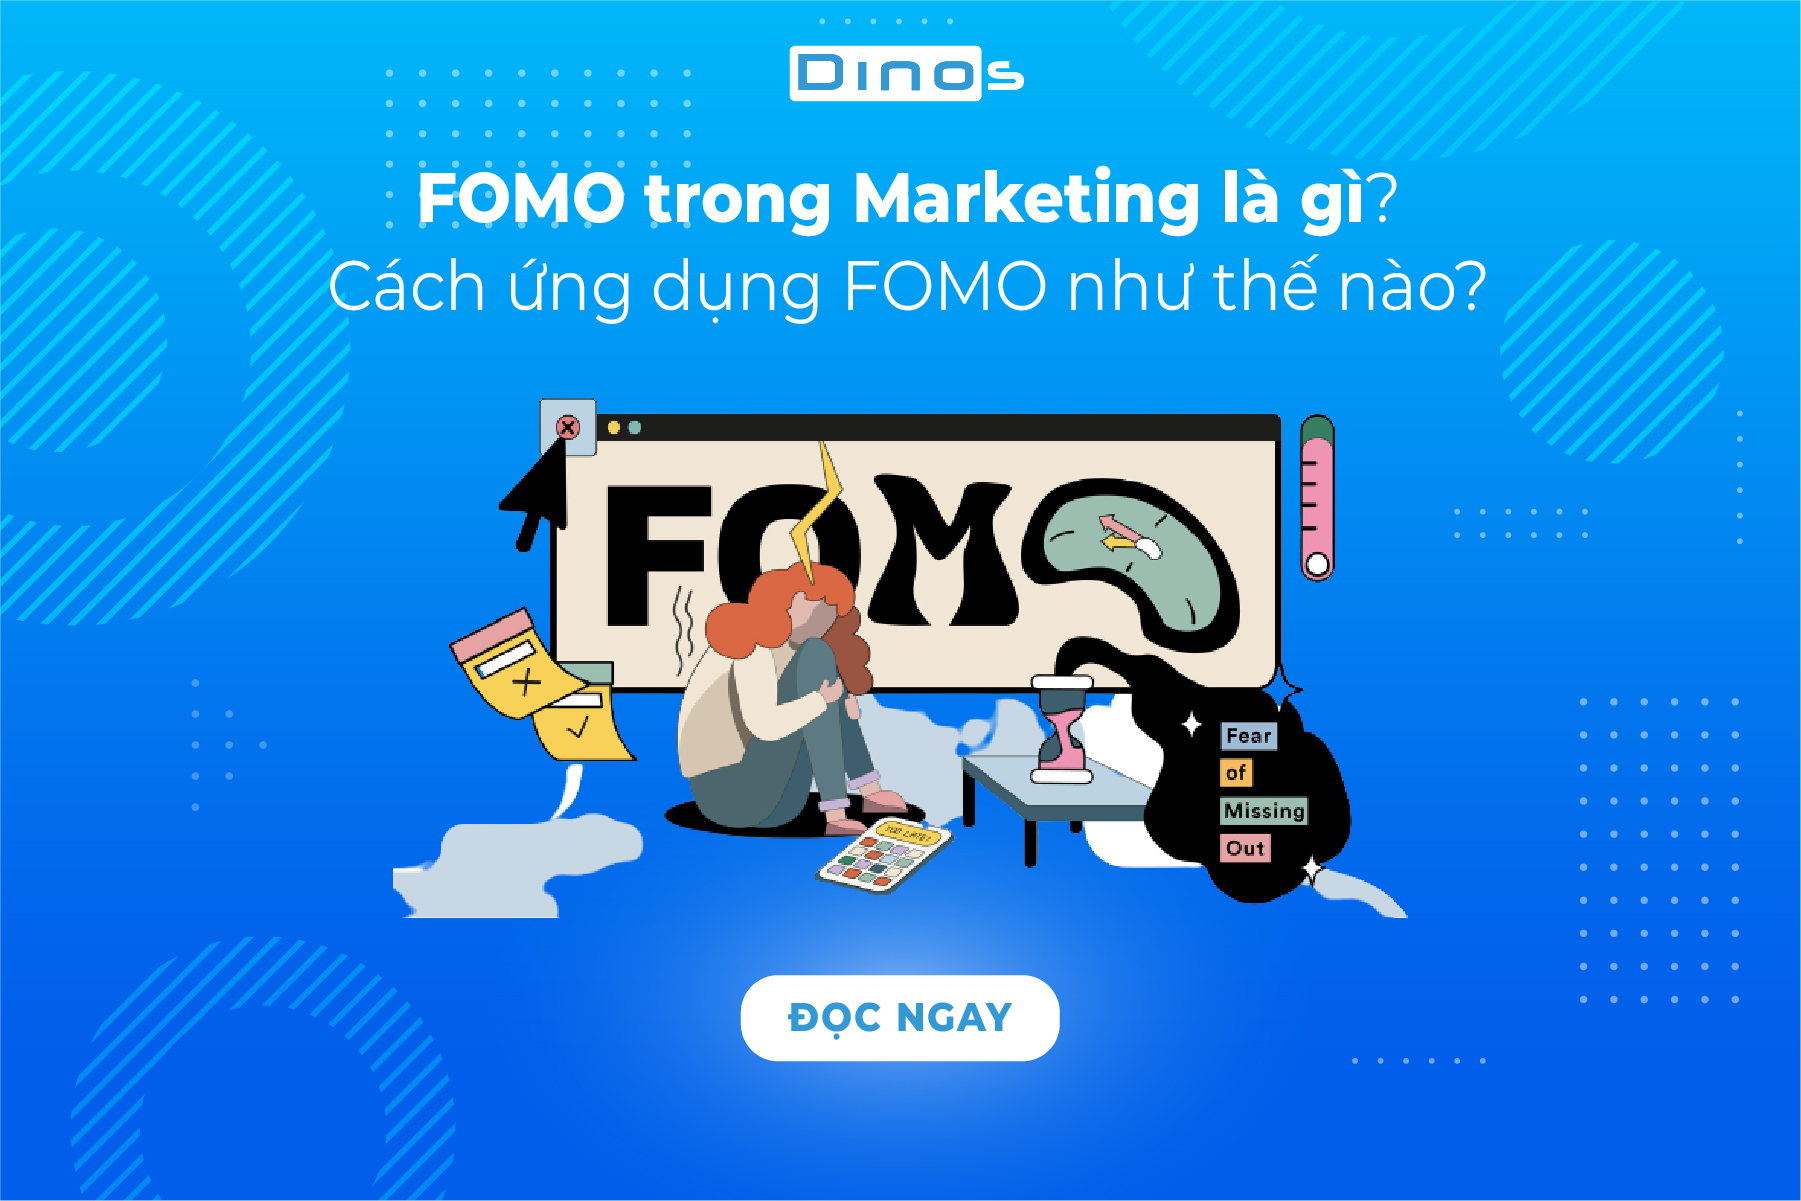 FOMO trong Marketing là gì? Cách ứng dụng FOMO như thế nào?